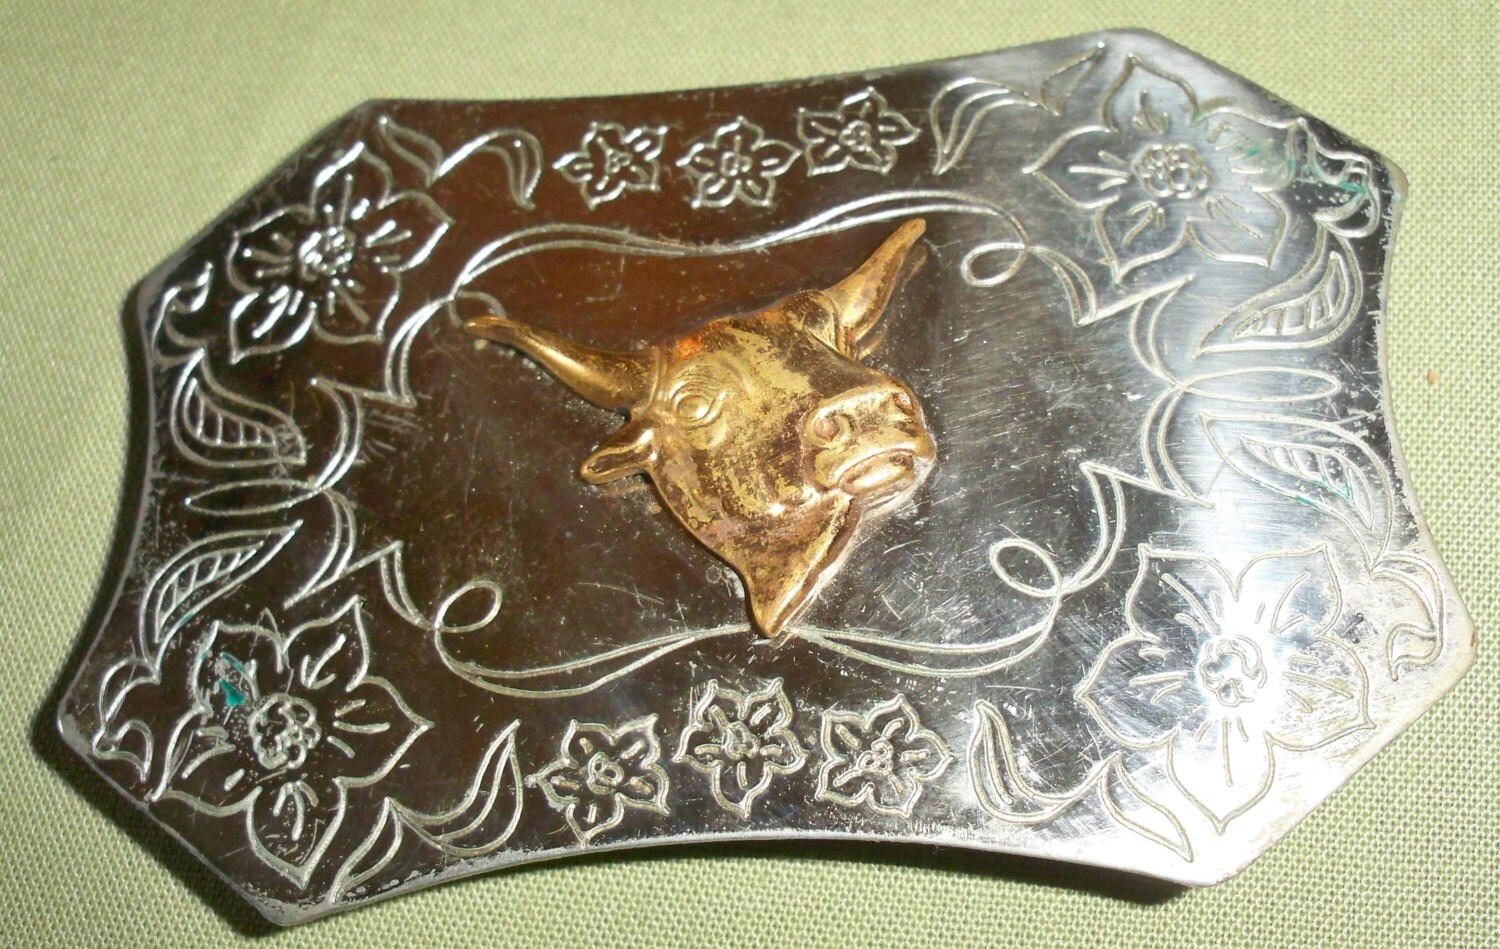 Vintage Western Nickel Silver Belt Buckle with Steer Head